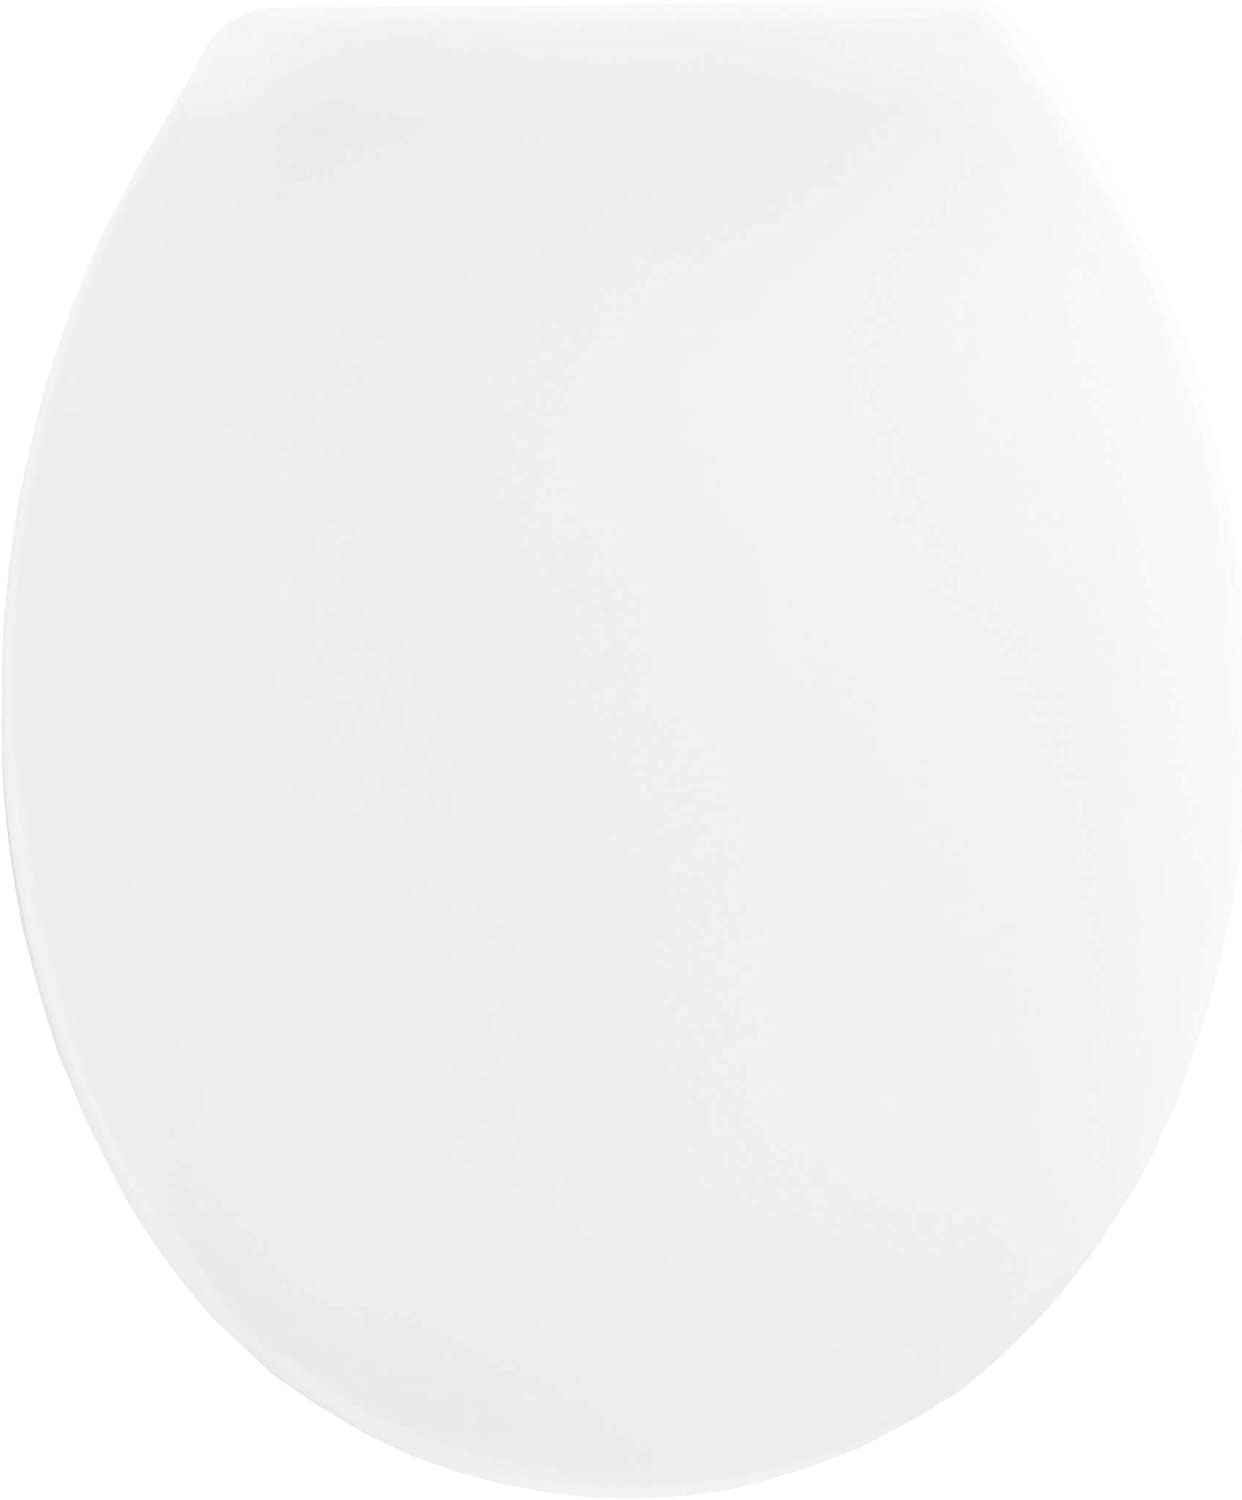 WC-Sitz "Calisto" - Klassisch weißer Look - Pflegeleichter Duroplast - Schlichtes Design passt in jedes Badezimmer / Toilettensitz / Klodeckel / KSCAL00